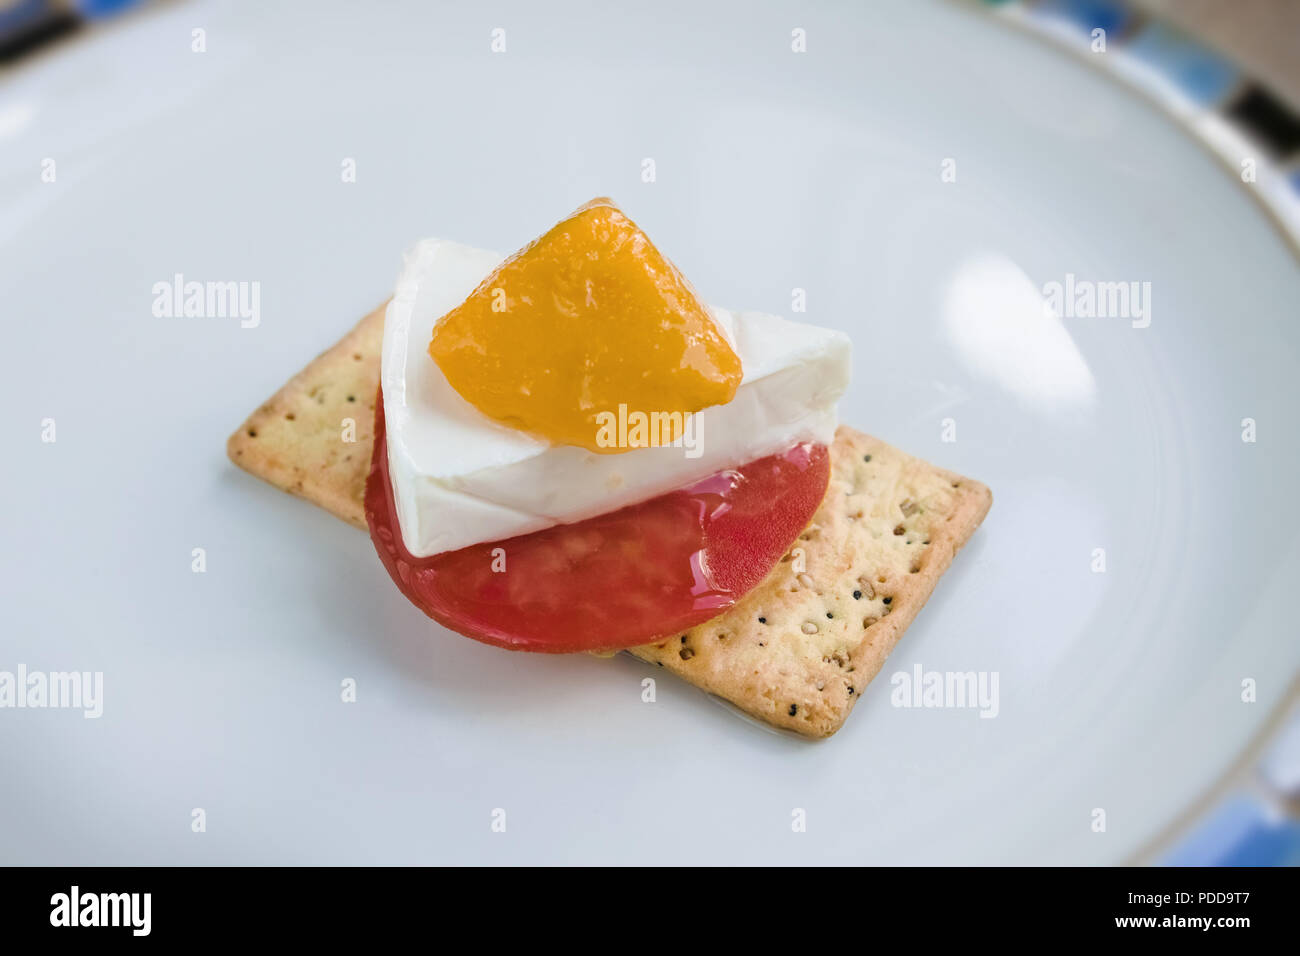 En la placa, en una galleta salada, tenemos una rodaja de tomate, queso, un trozo de mango Foto de stock